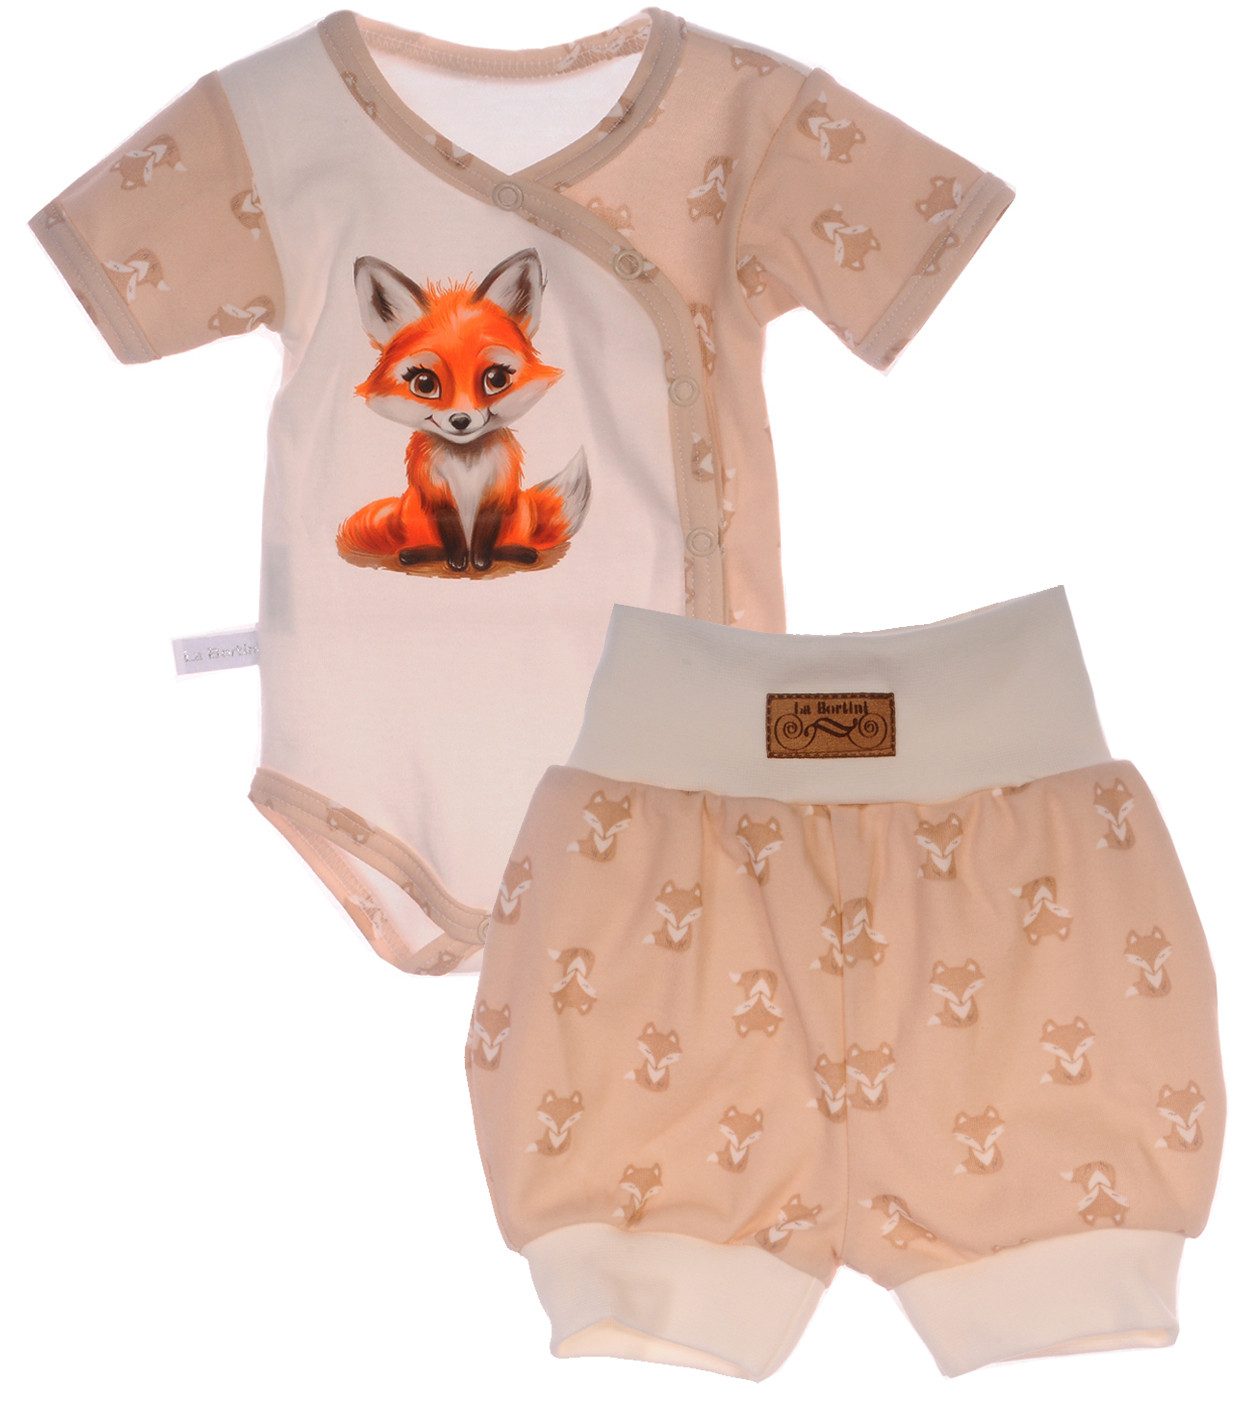 La Bortini Body & Shorts Wickelbody und Shorts Baby Anzug 2tlg Set aus reiner Baumwolle, 44 50 56 62 68 74 80 86 92 98